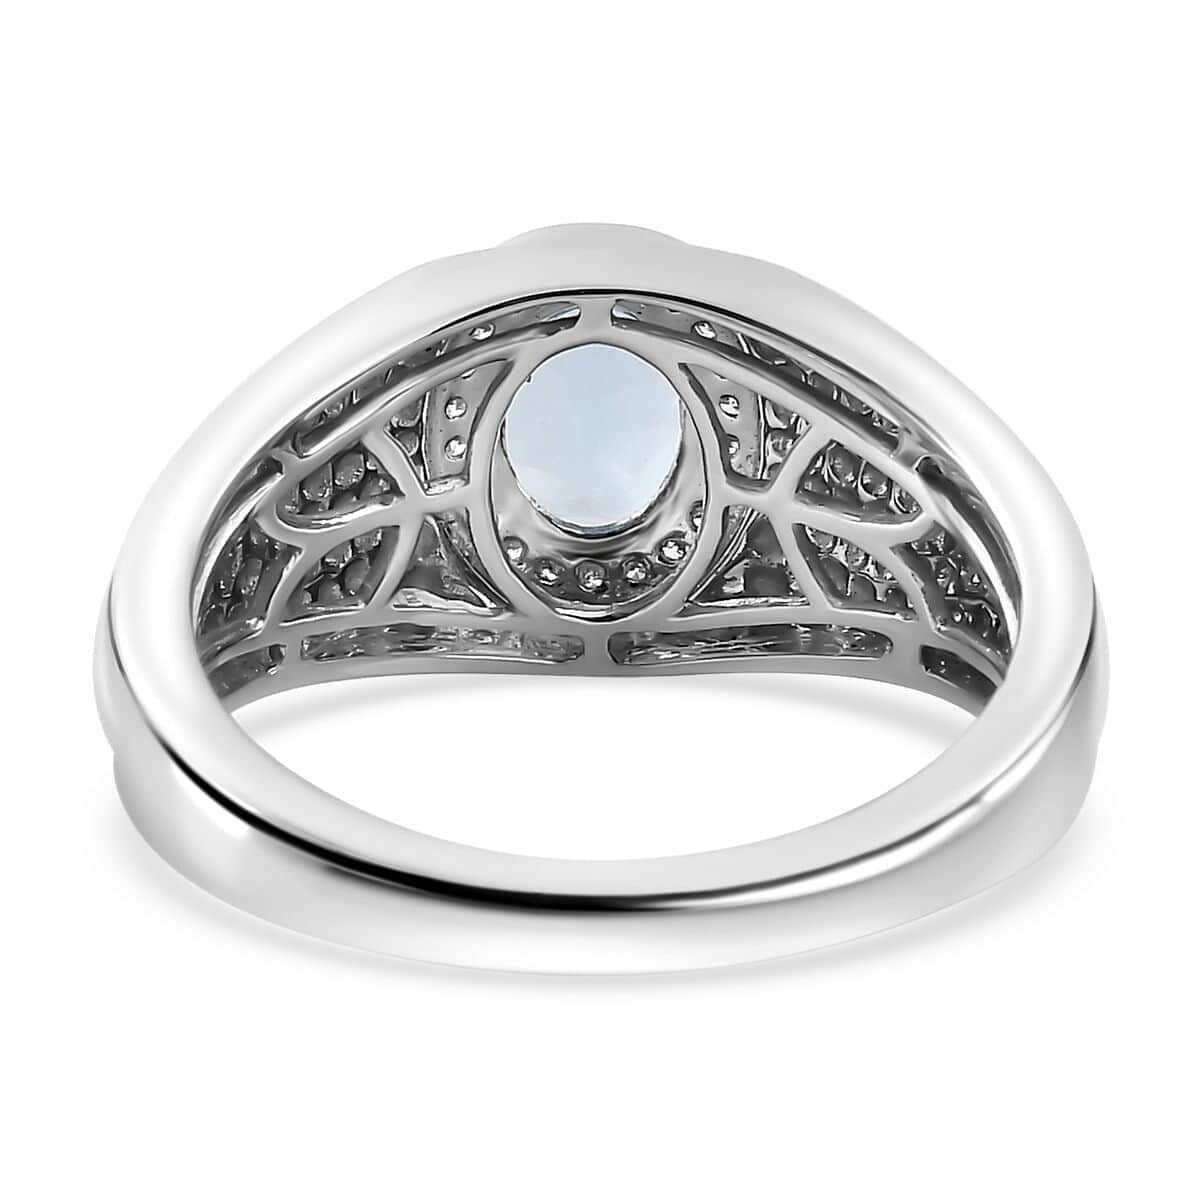 Luxoro 10K White Gold Premium Santa Maria Aquamarine and G-H I2 Diamond Men's Ring (Size 9.0) 6.15 Grams 1.20 ctw image number 4